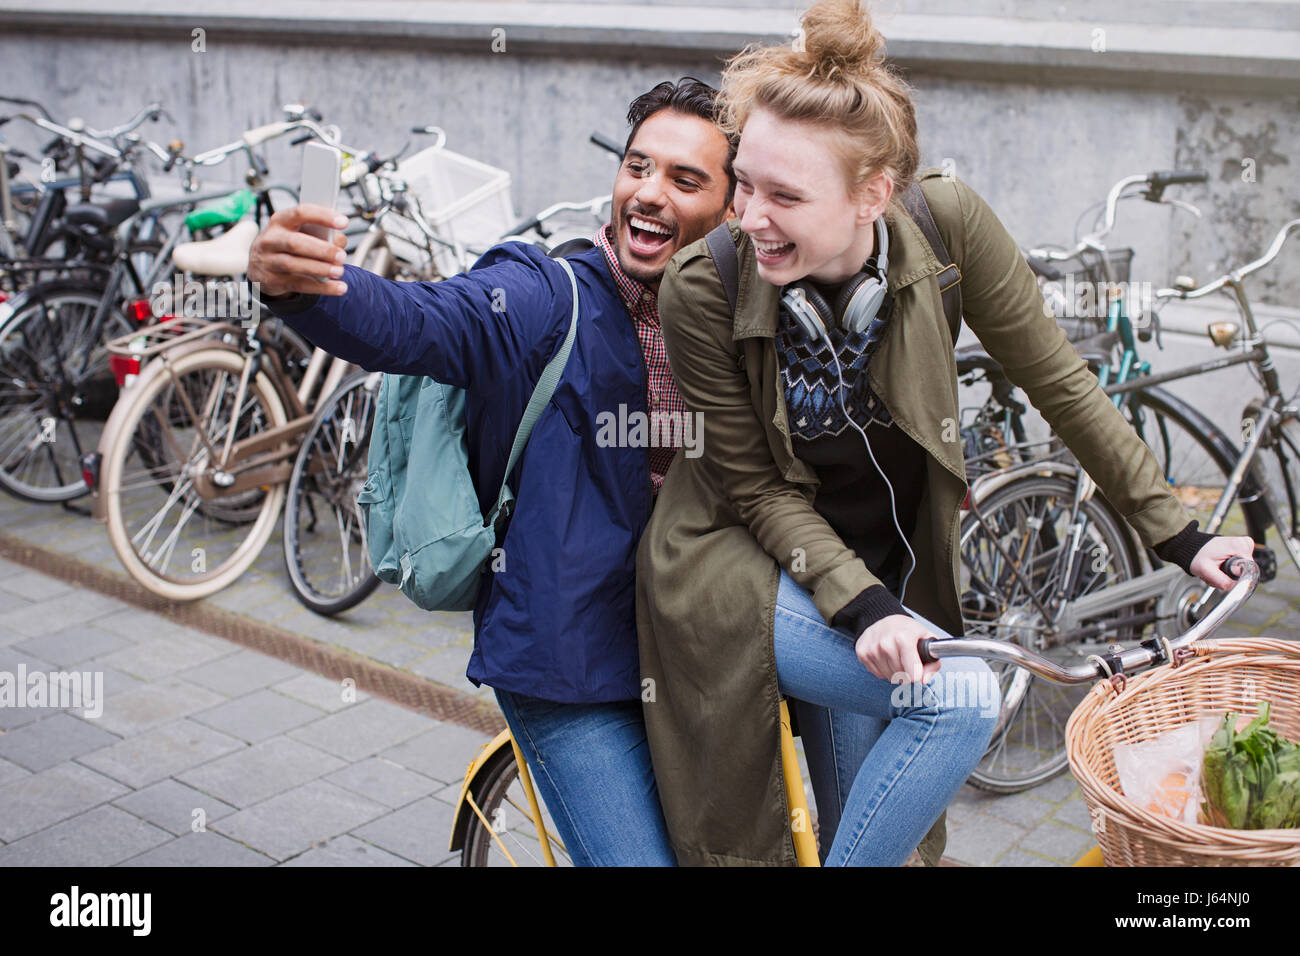 Spielerisch, lachend junges Paar unter Selfie mit Kamera-Handy auf dem Fahrrad Stockfoto